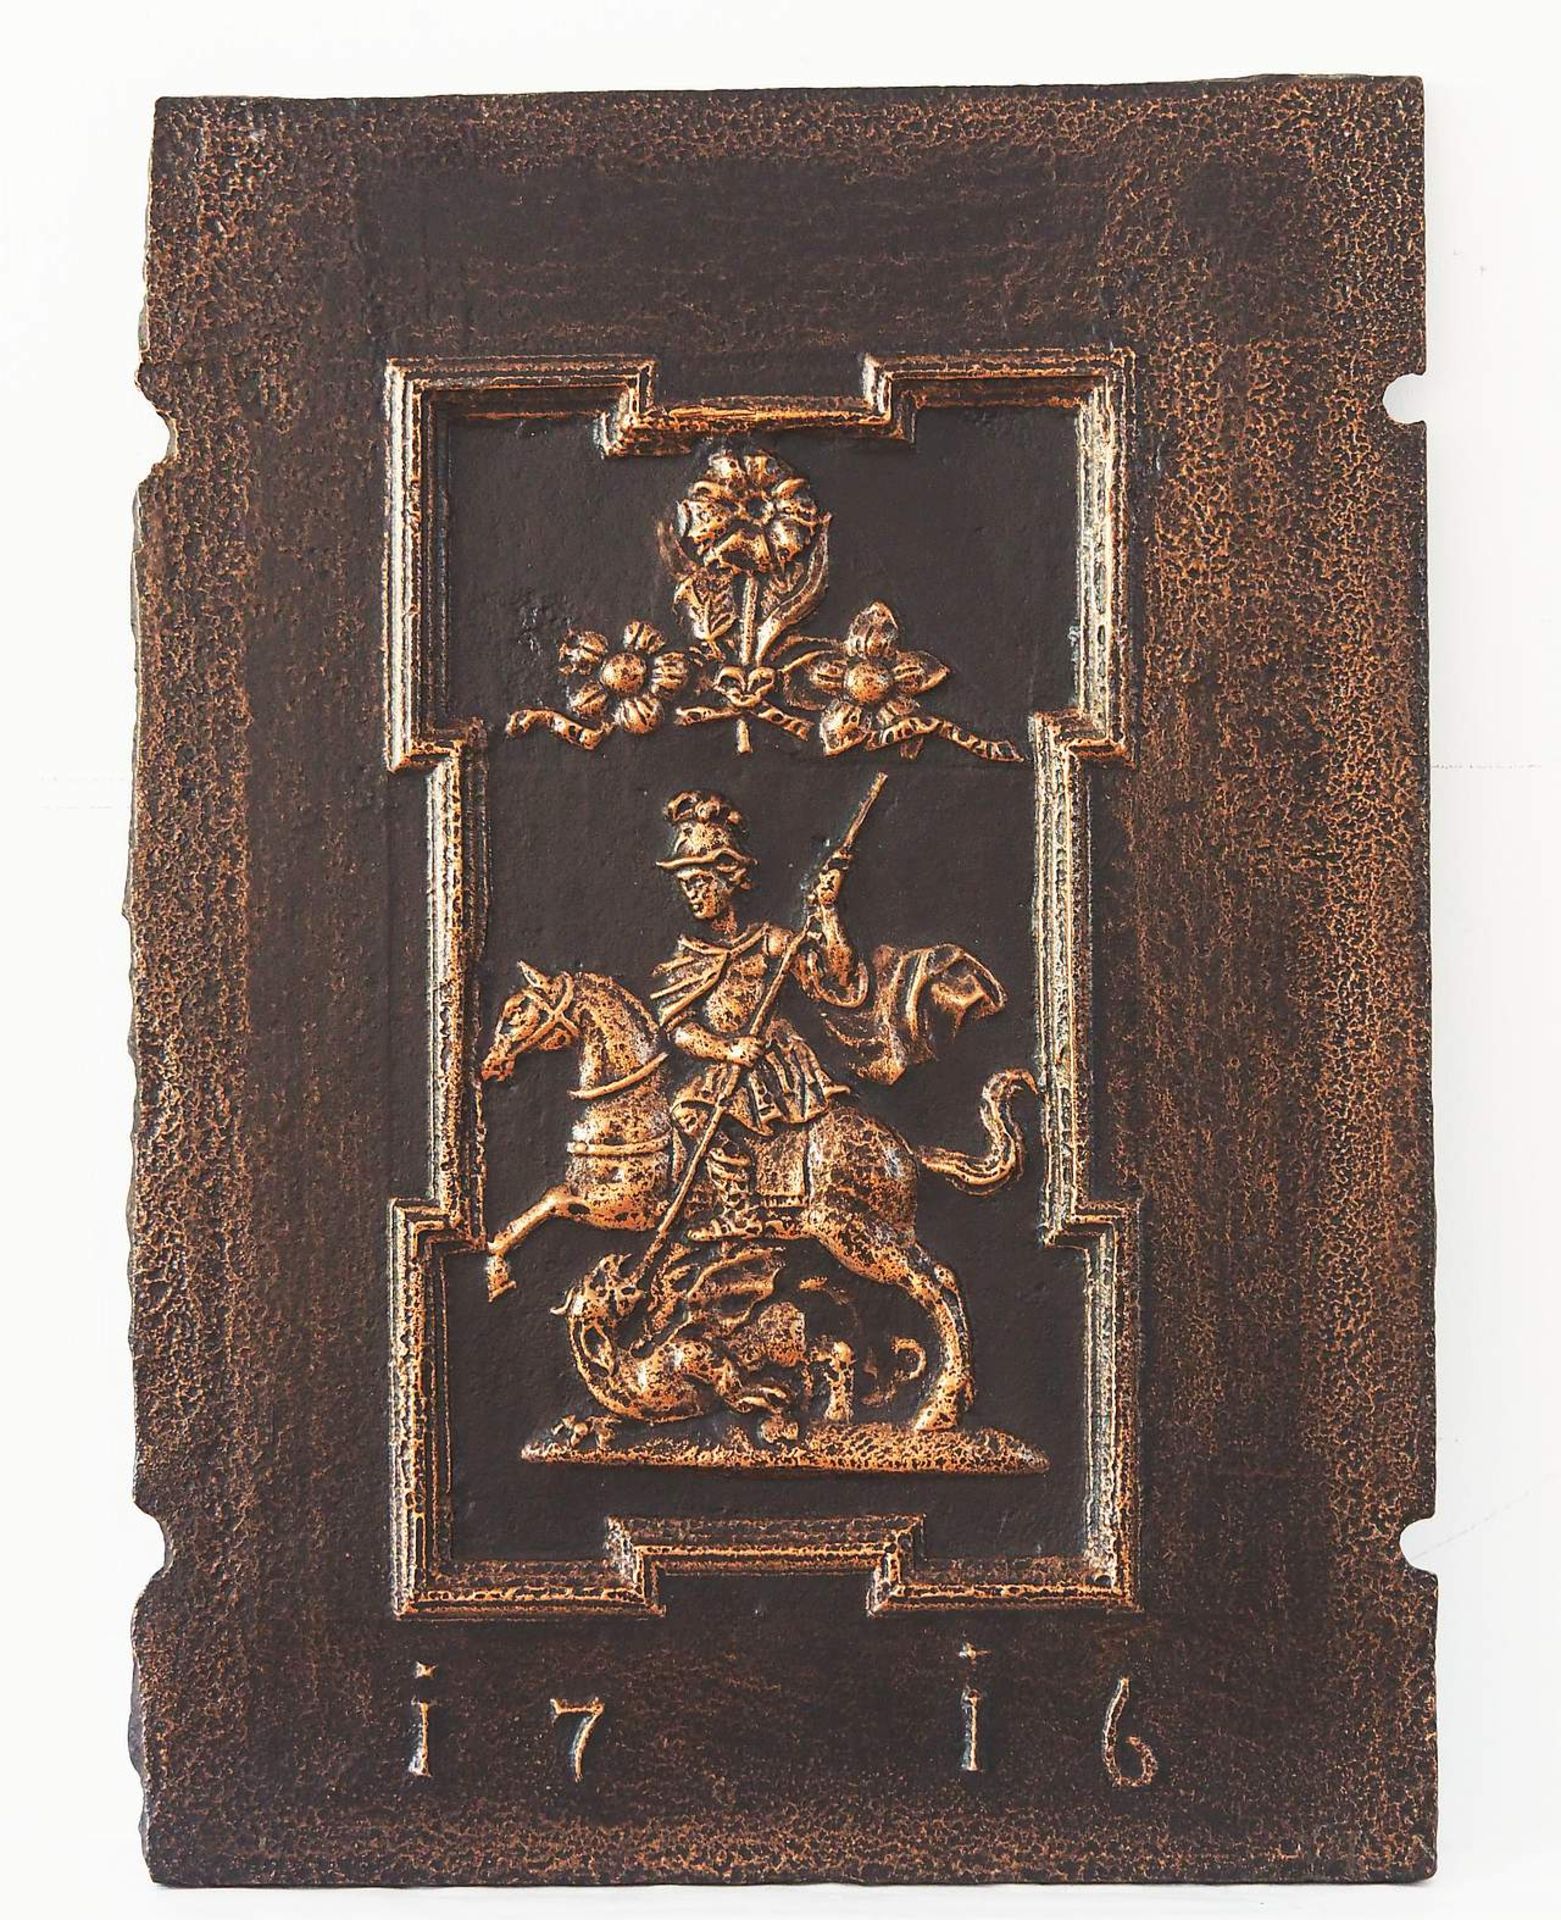 Große gusseiserne Kaminplatte "Santk Georg" besiegt den Drachen, unten mit Jahreszahl 1716 - Image 2 of 6